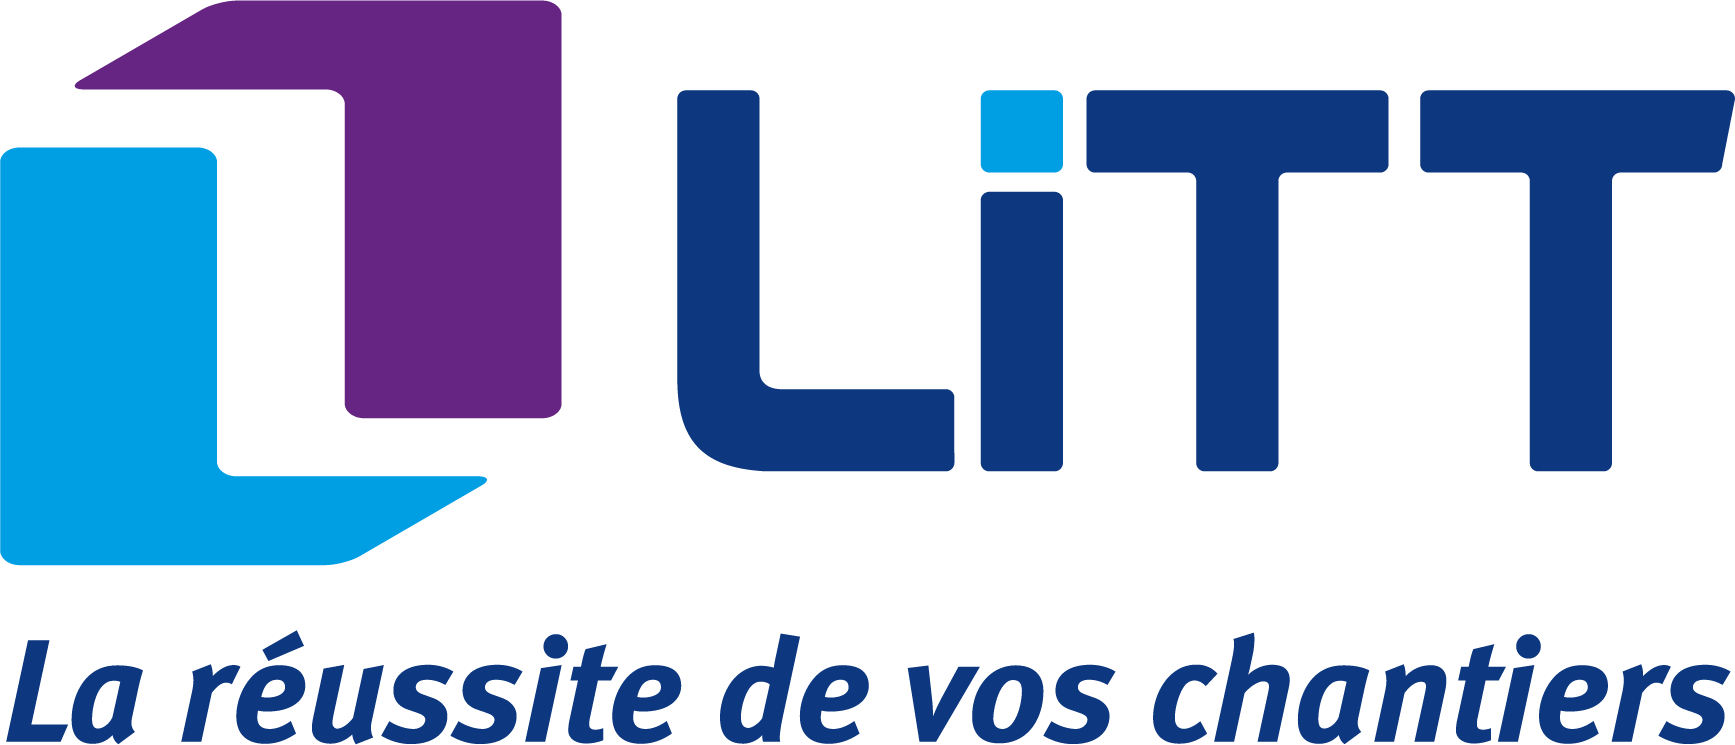 LiTT-logo-transparent